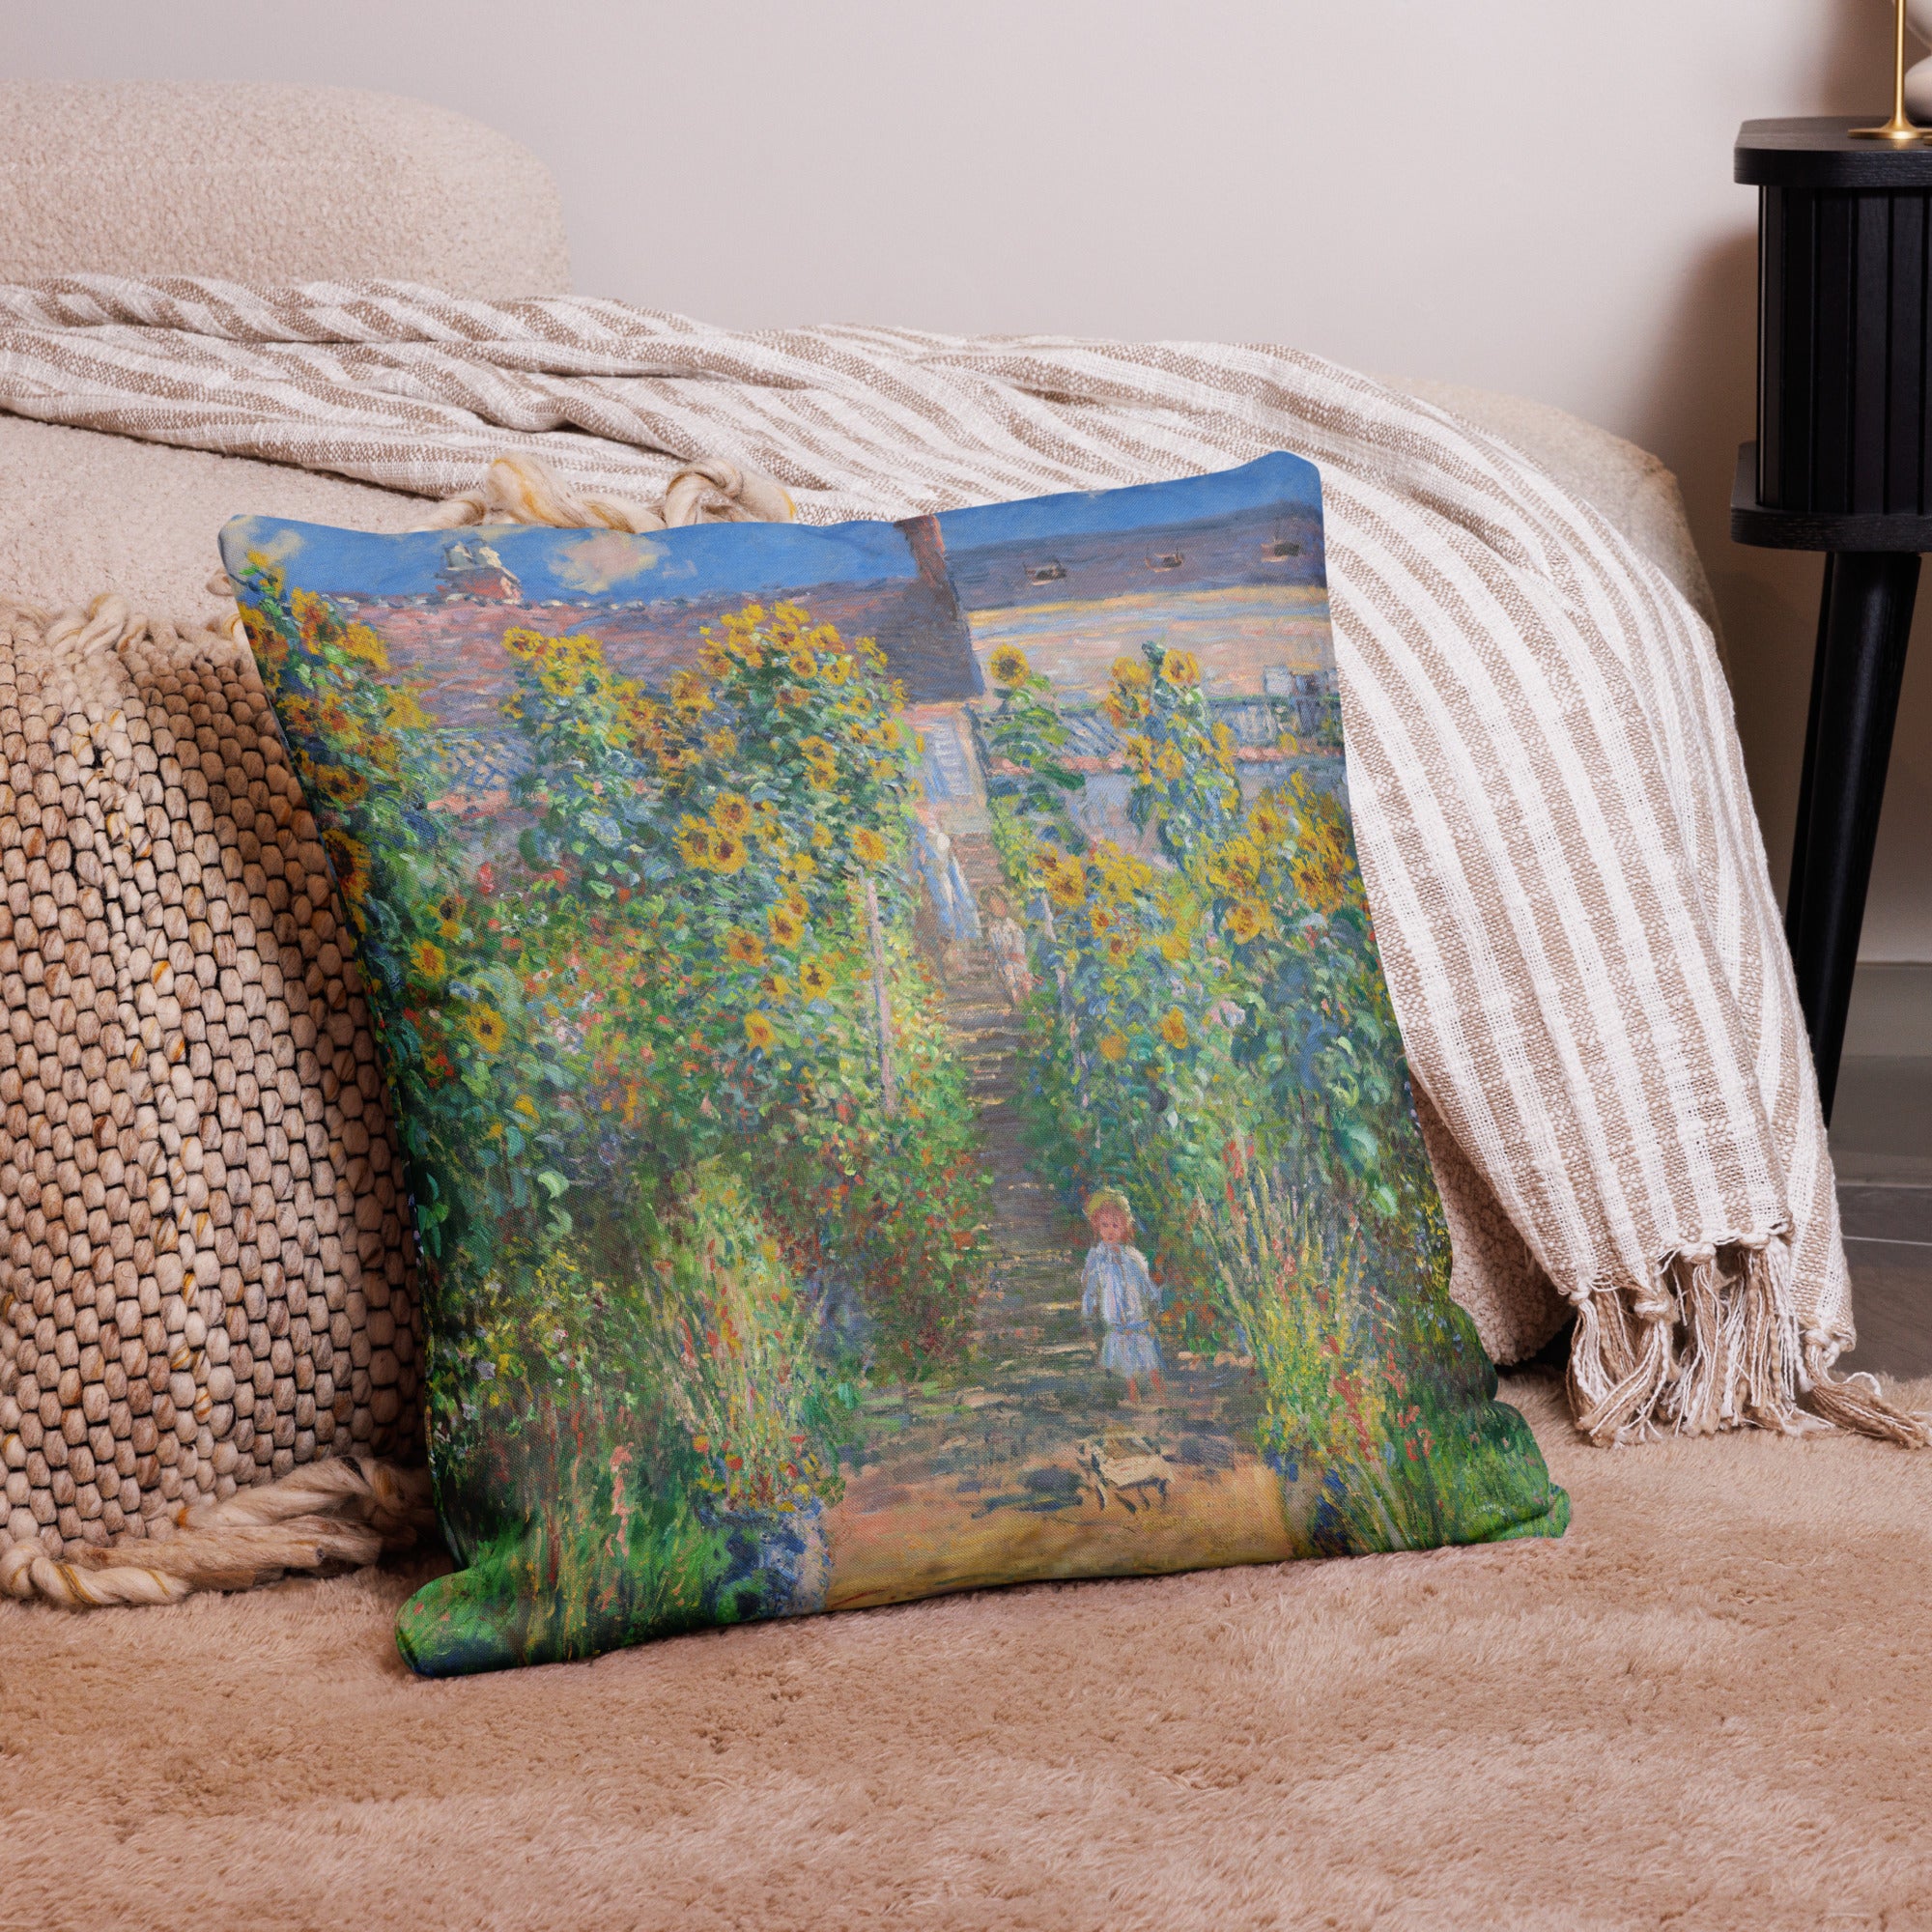 Claude Monet 'The Artist's Garden at Vétheuil' Famous Painting Premium Pillow | Premium Art Cushion